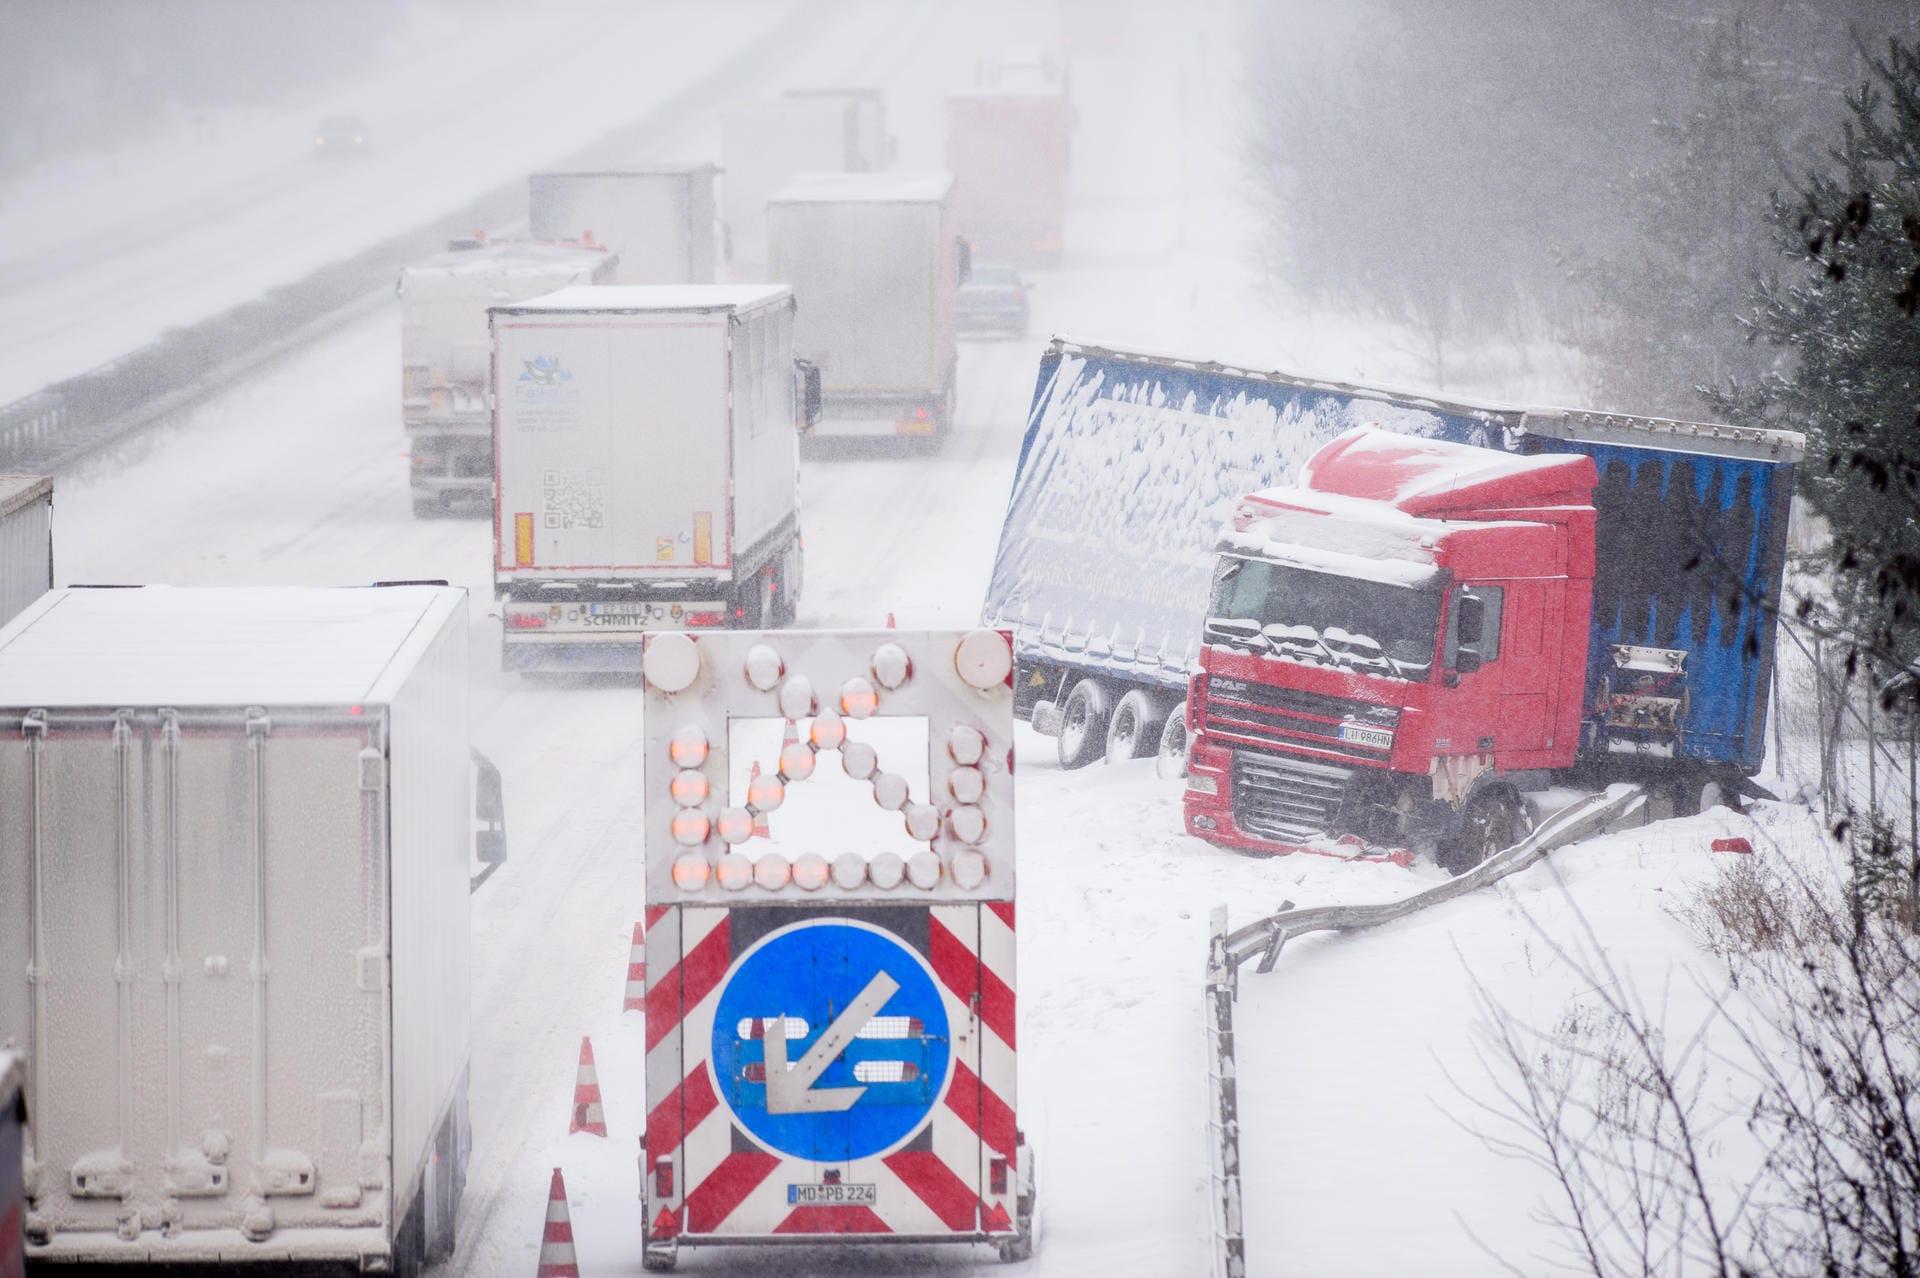 Auch am Dienstag hält die Extremwetterlage in Teilen Deutschlands an. Glatte Straßen und eisige Temperaturen sorgen teilweise für Chaos. Auf der schneebedeckten A2 in Sachsen-Anhalt ist ein Lkw in einen Graben gerutscht.